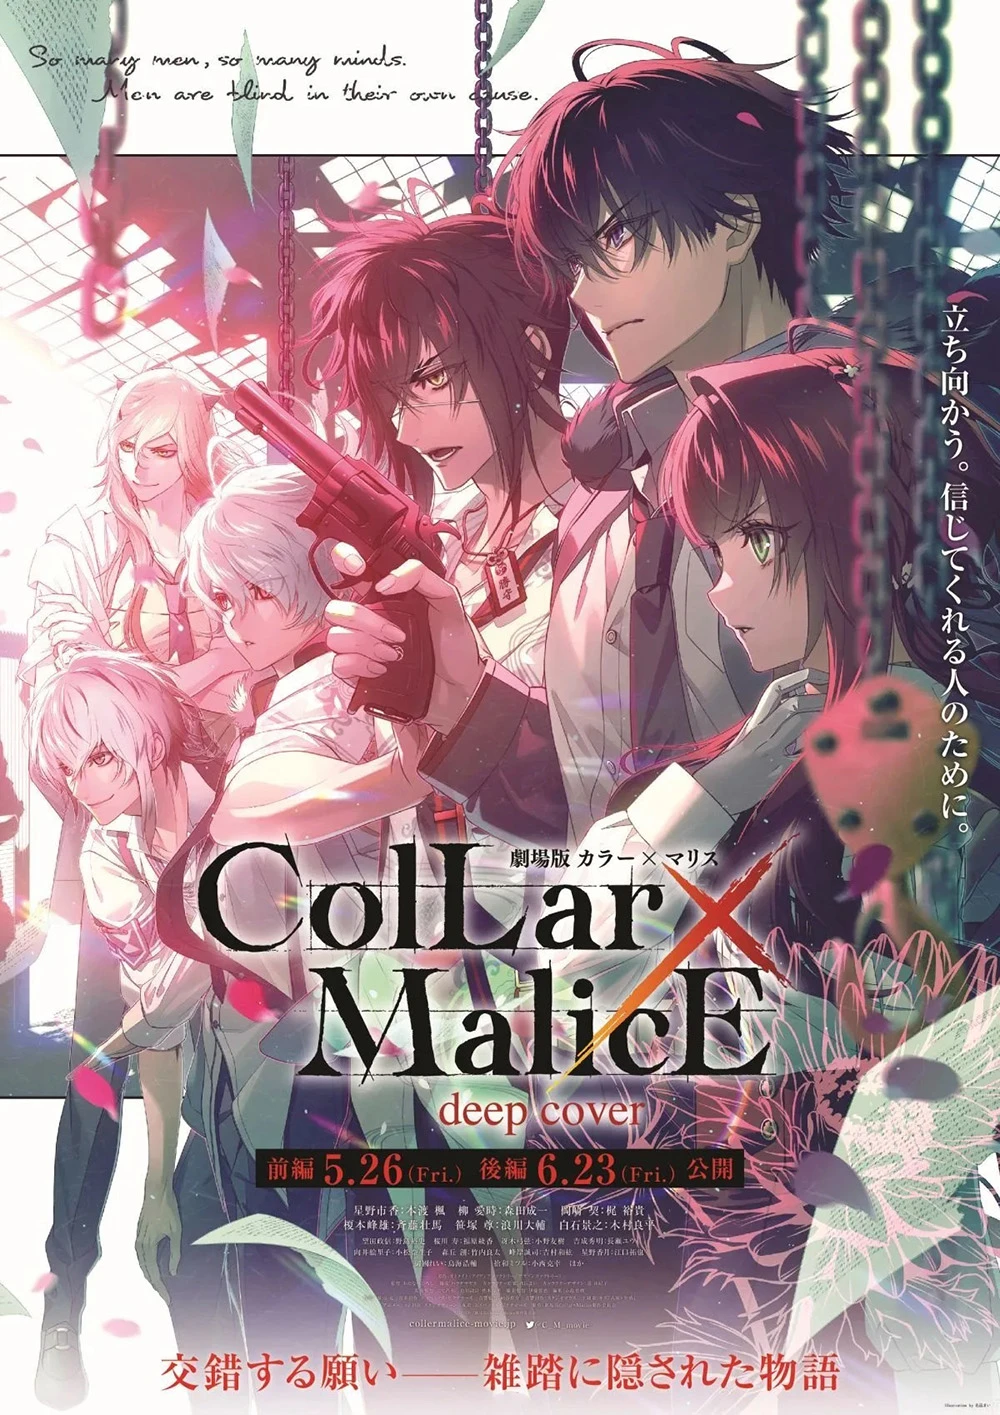 女性向游戏改编动画《剧场版 Collar×Malice -deep cover-》确定前篇5月26日、后篇6月23日于日本上映！声优 本渡枫、小西克幸 追加演出